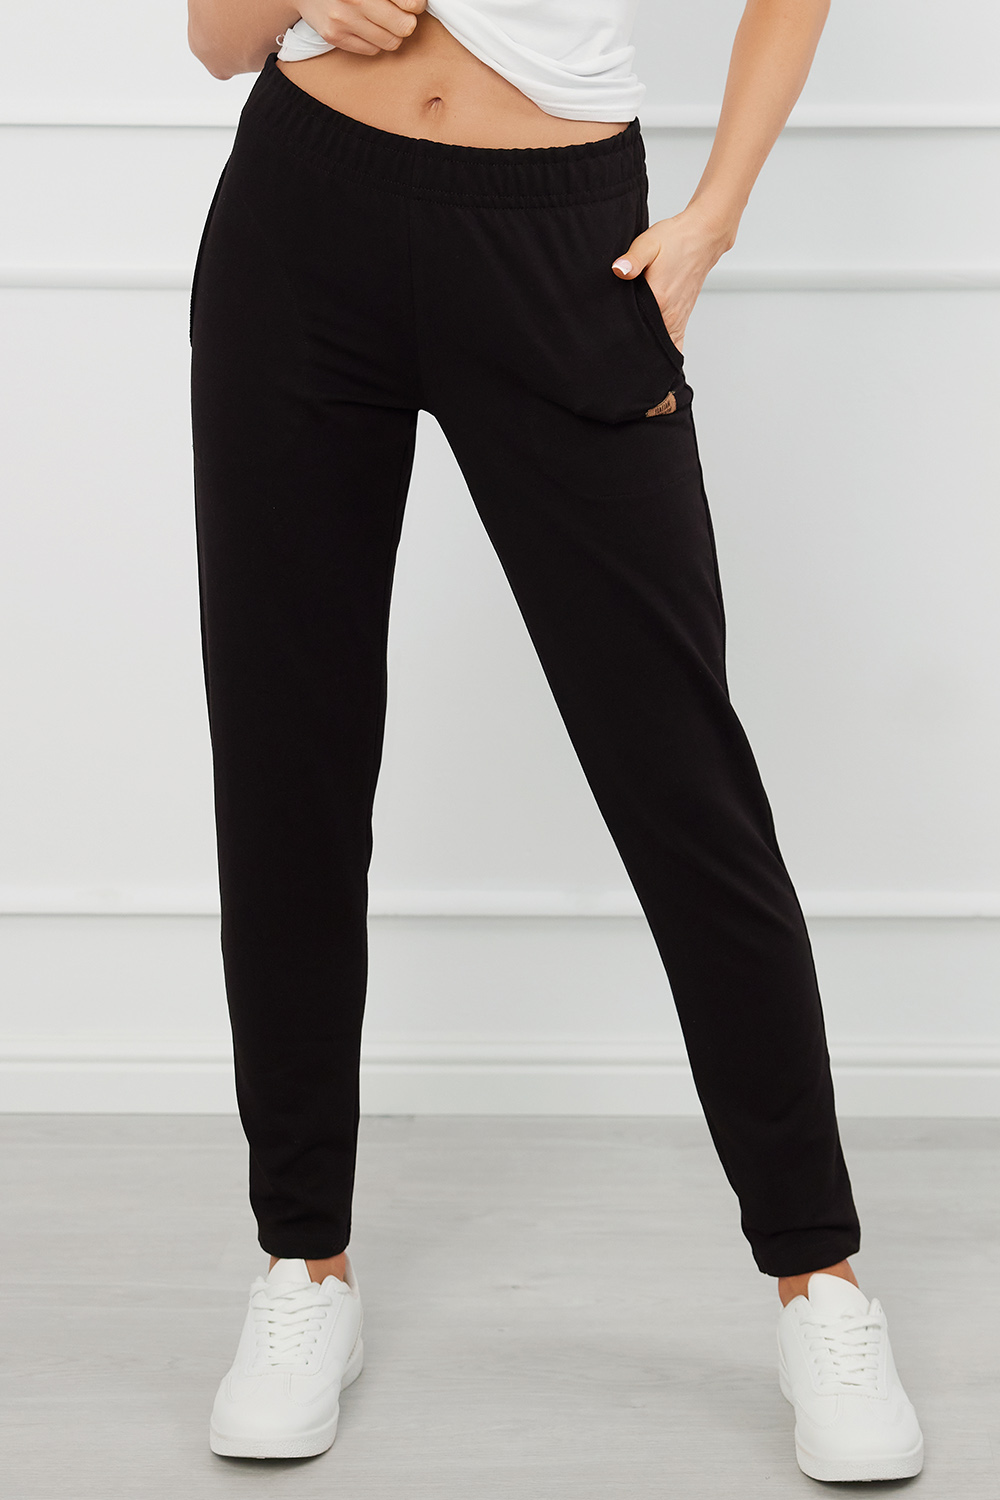 Italian Fashion Stella d. sp. Spodnie dres, czarny